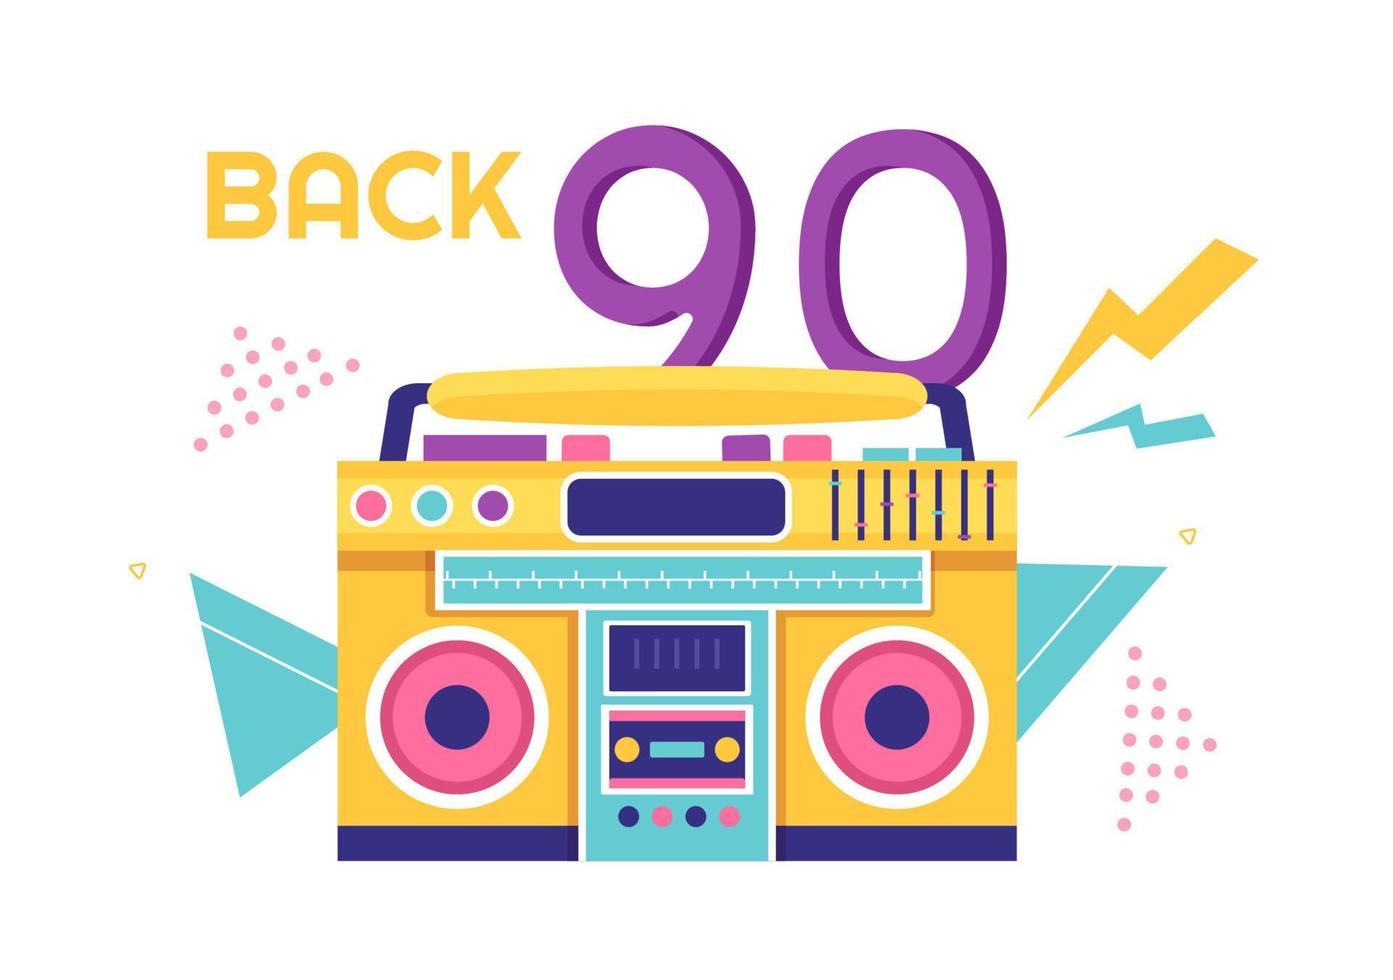 90er Jahre Retro-Party-Cartoon-Hintergrundillustration mit Musik der 90er Jahre, Turnschuhen, Radio, Tanzzeit und Bandkassette im trendigen flachen Design vektor